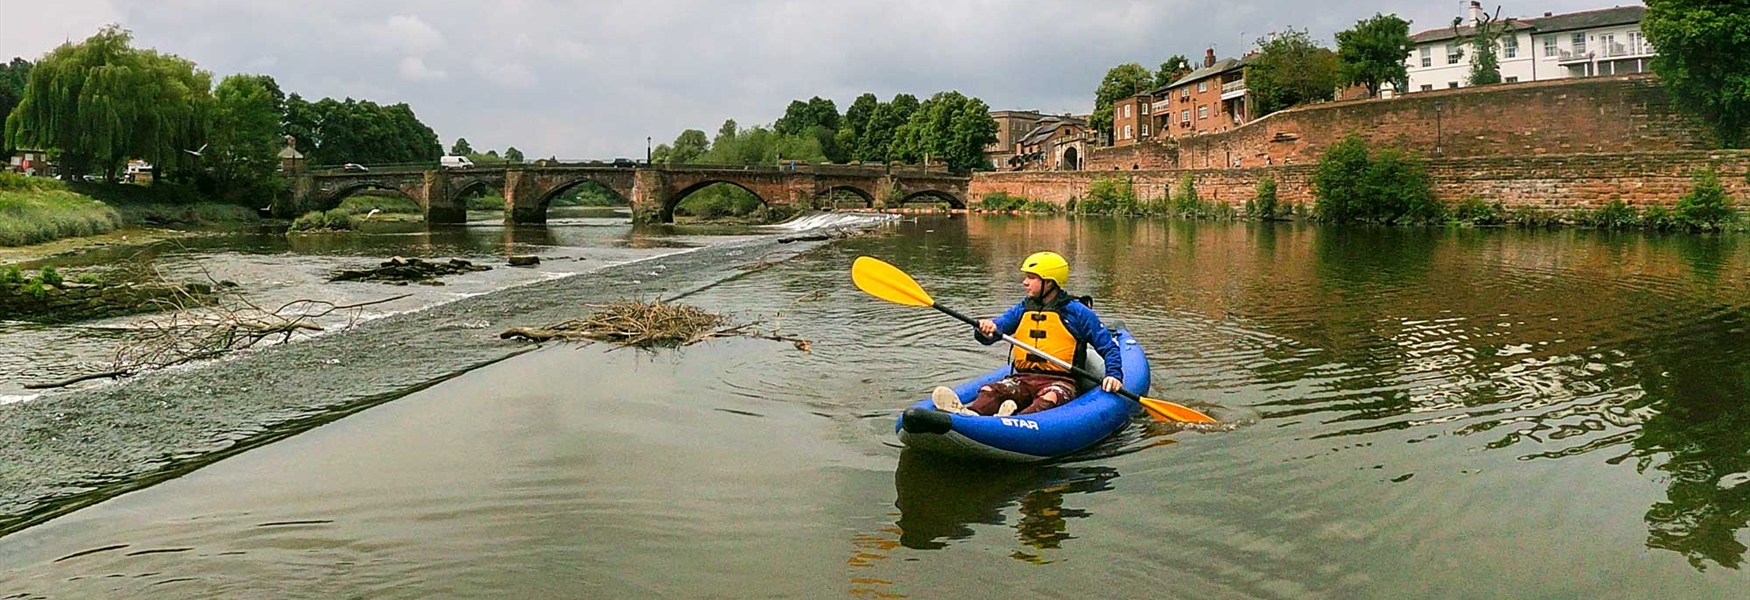 Kayaking on the River Dee. Photo Credit: Dee River Kayaking